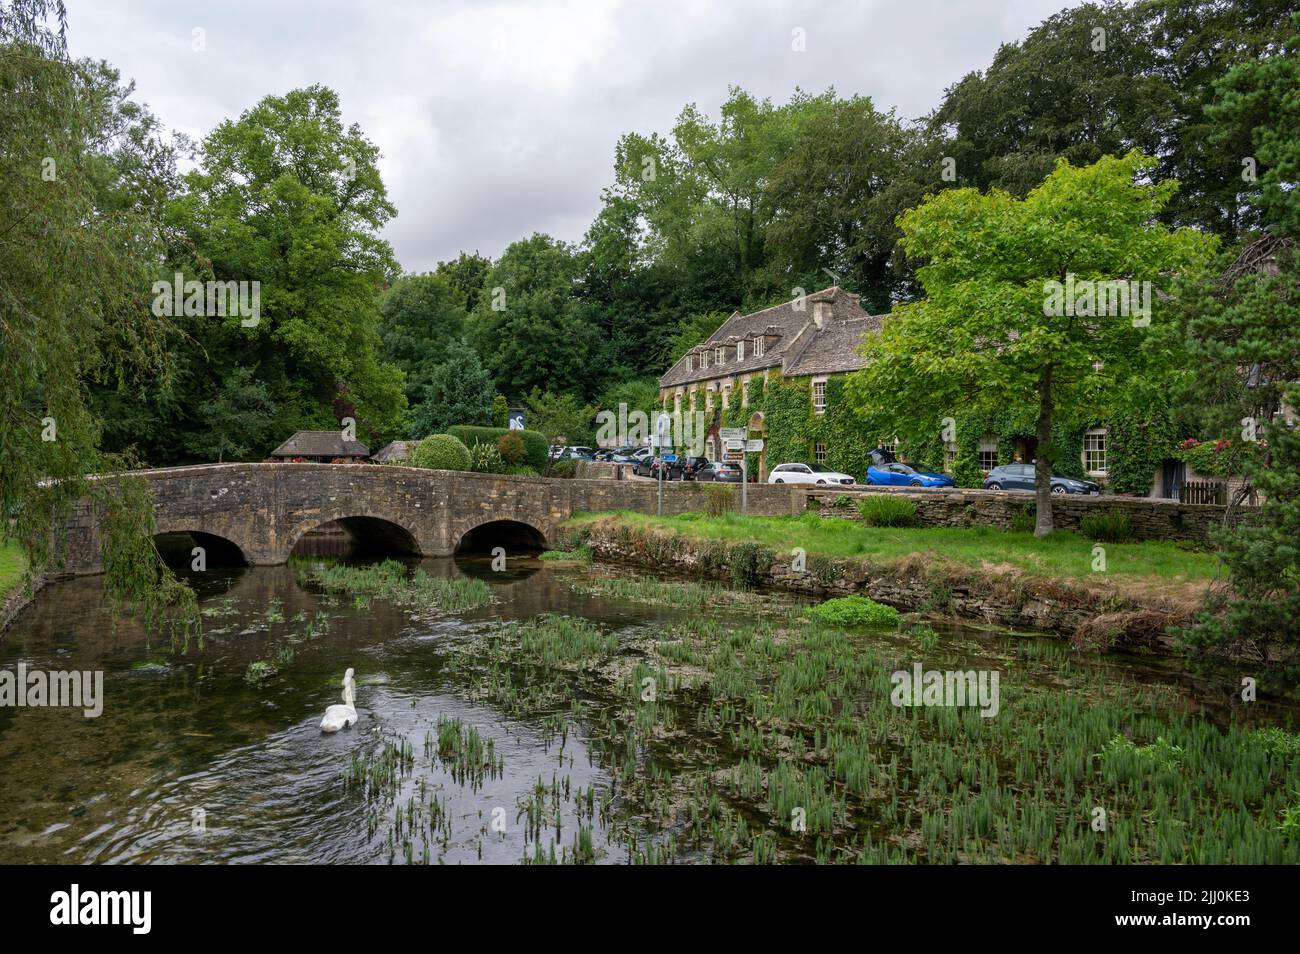 Un pont sur une rivière et un chalet en pierre entouré d'arbres verts dans le village de Bibury Banque D'Images